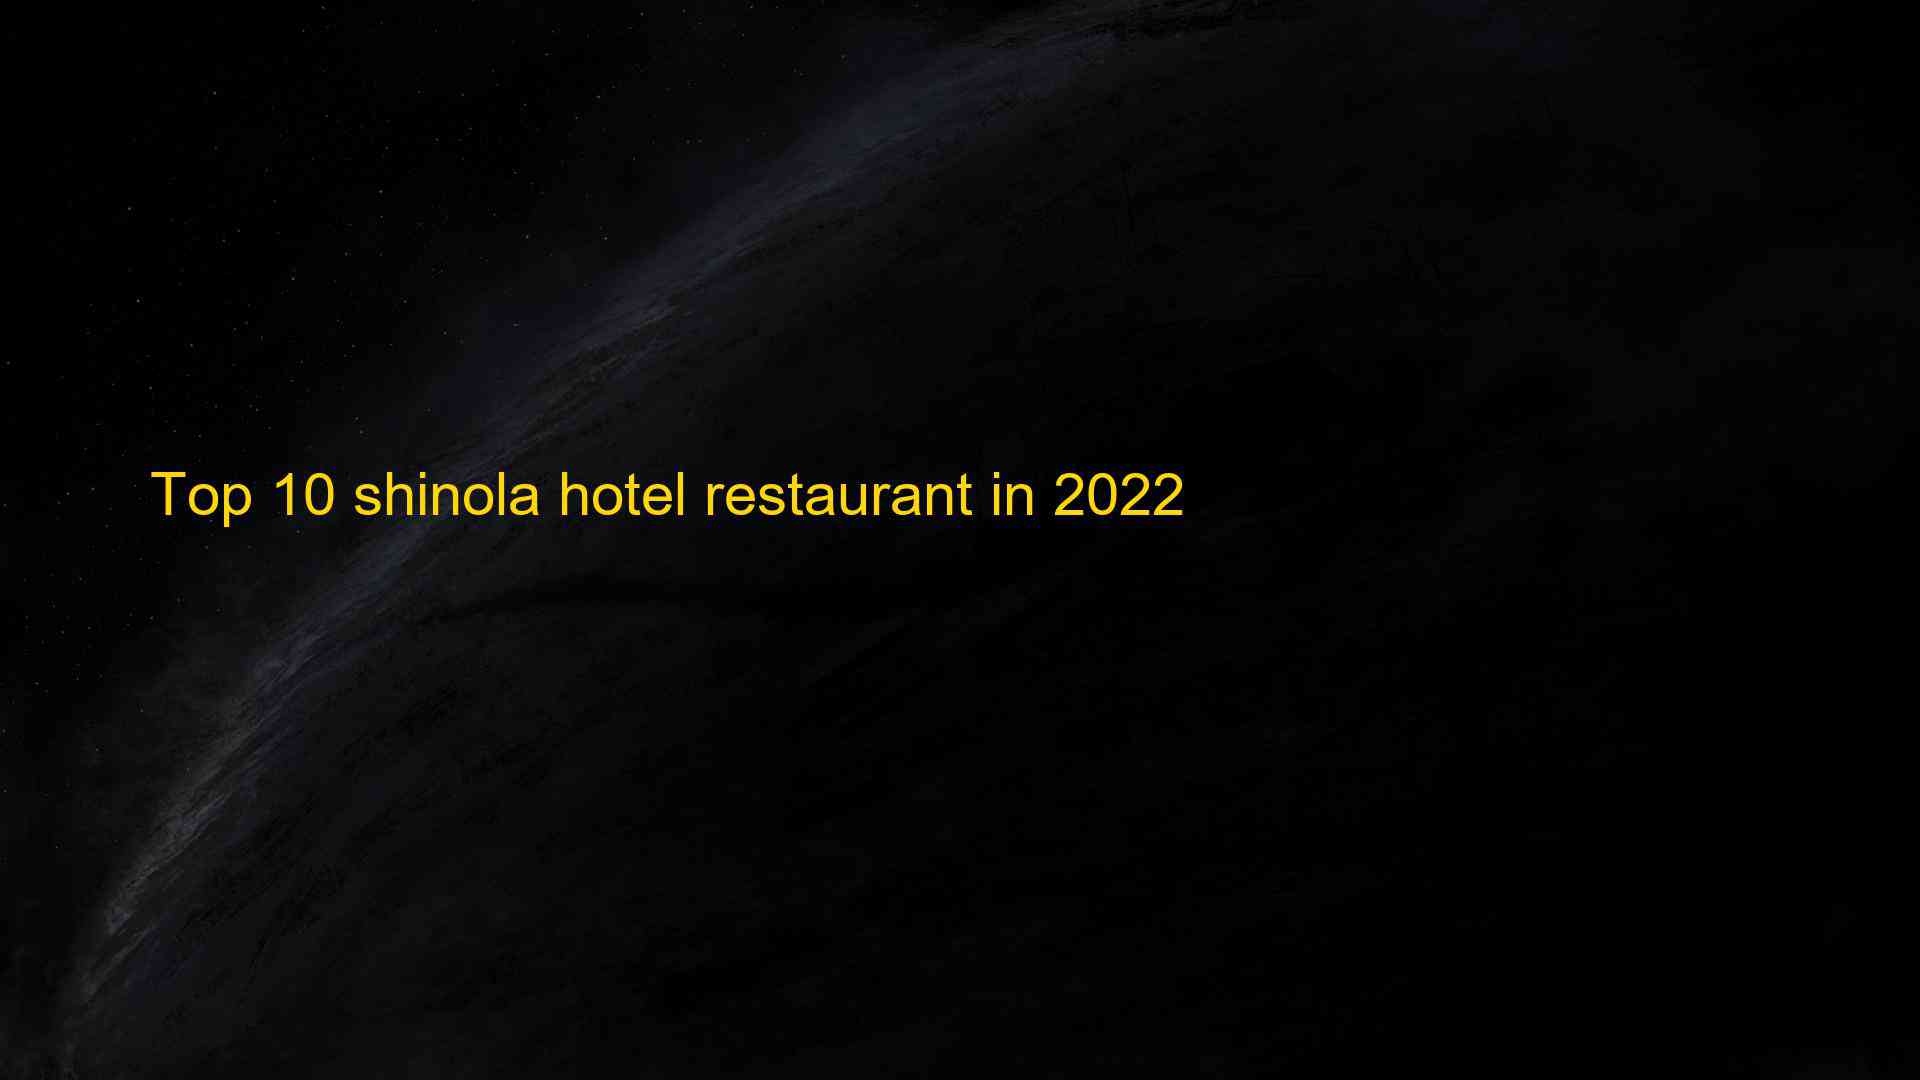 Top 10 shinola hotel restaurant in 2022 1662844352